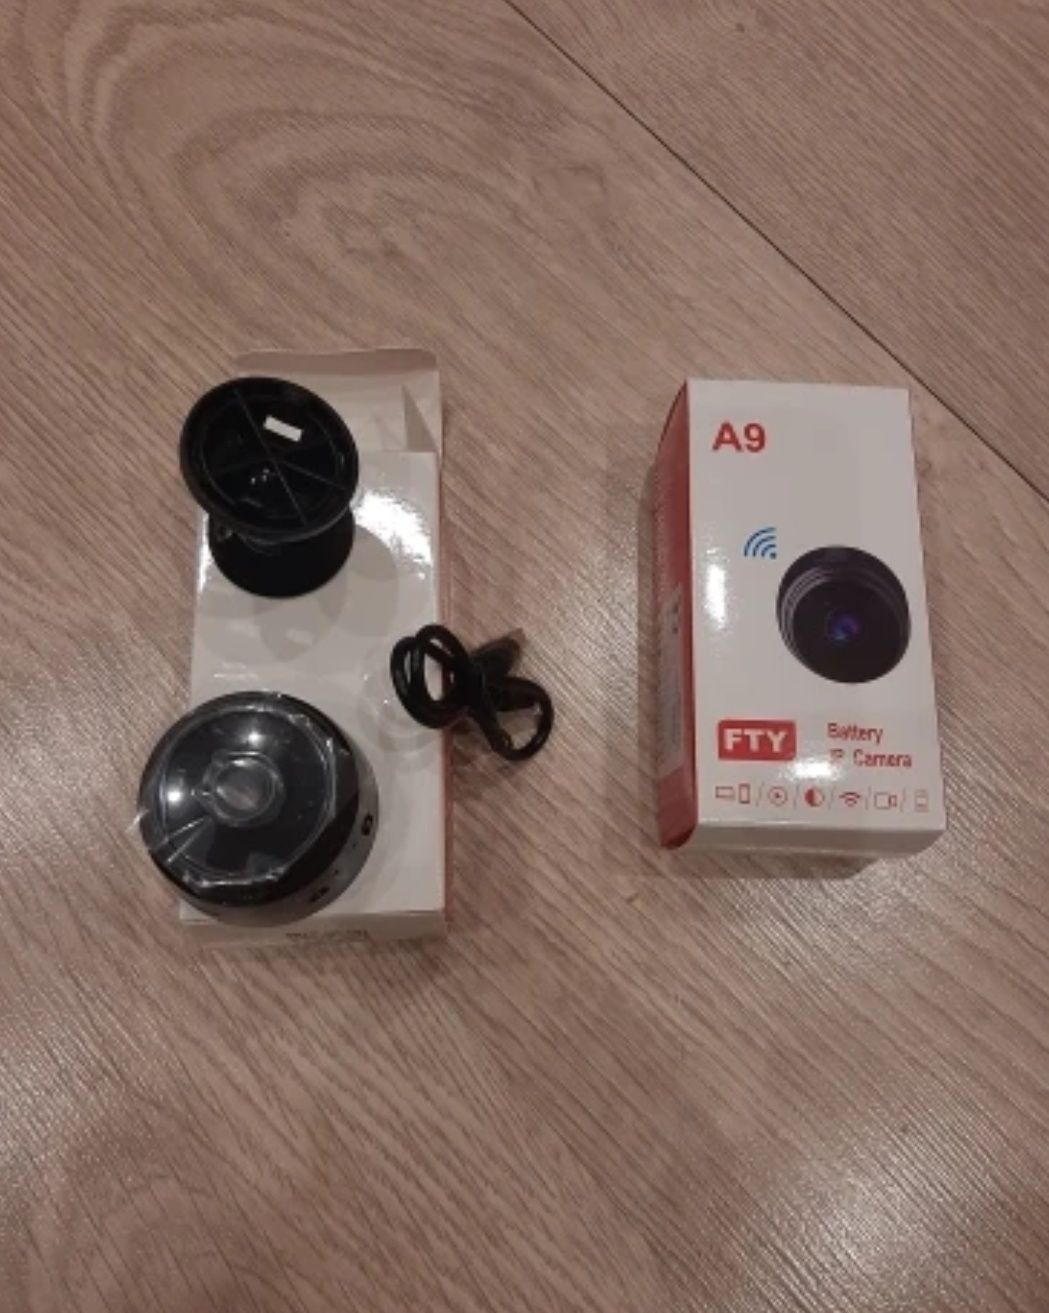 Міні WiFi камера FtyCamPro модель А9